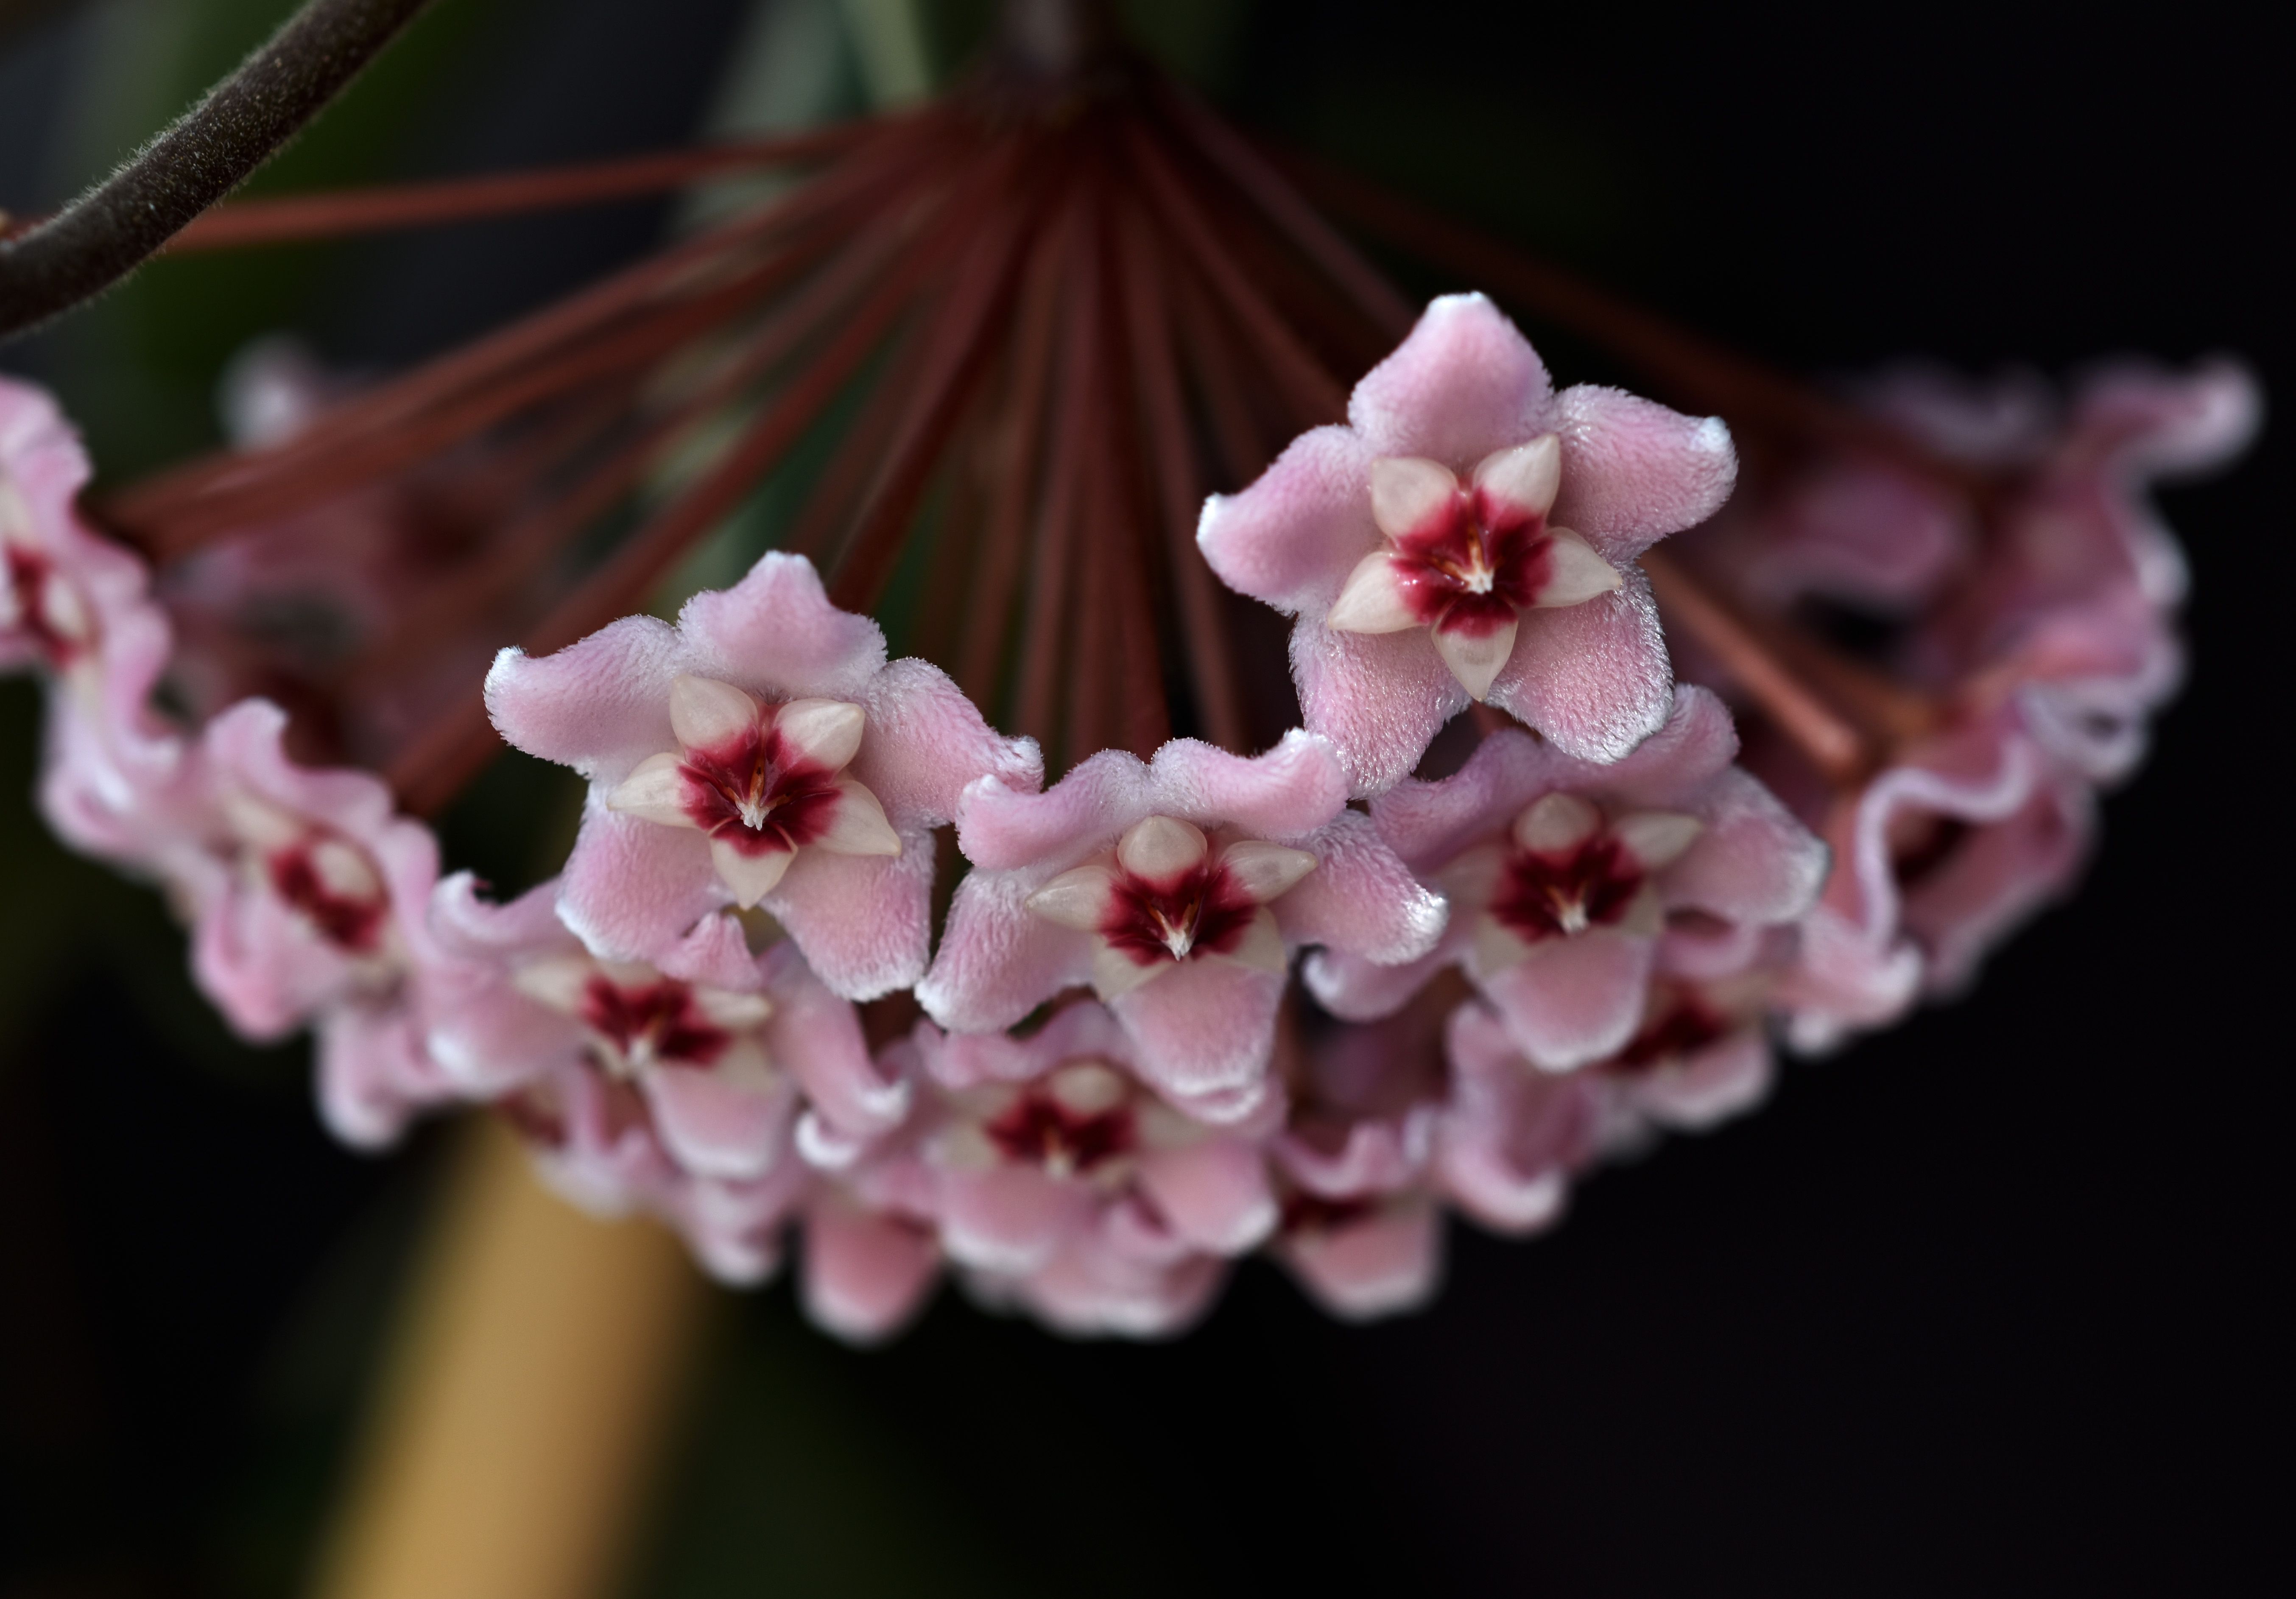 Hoya flower 5.jpg